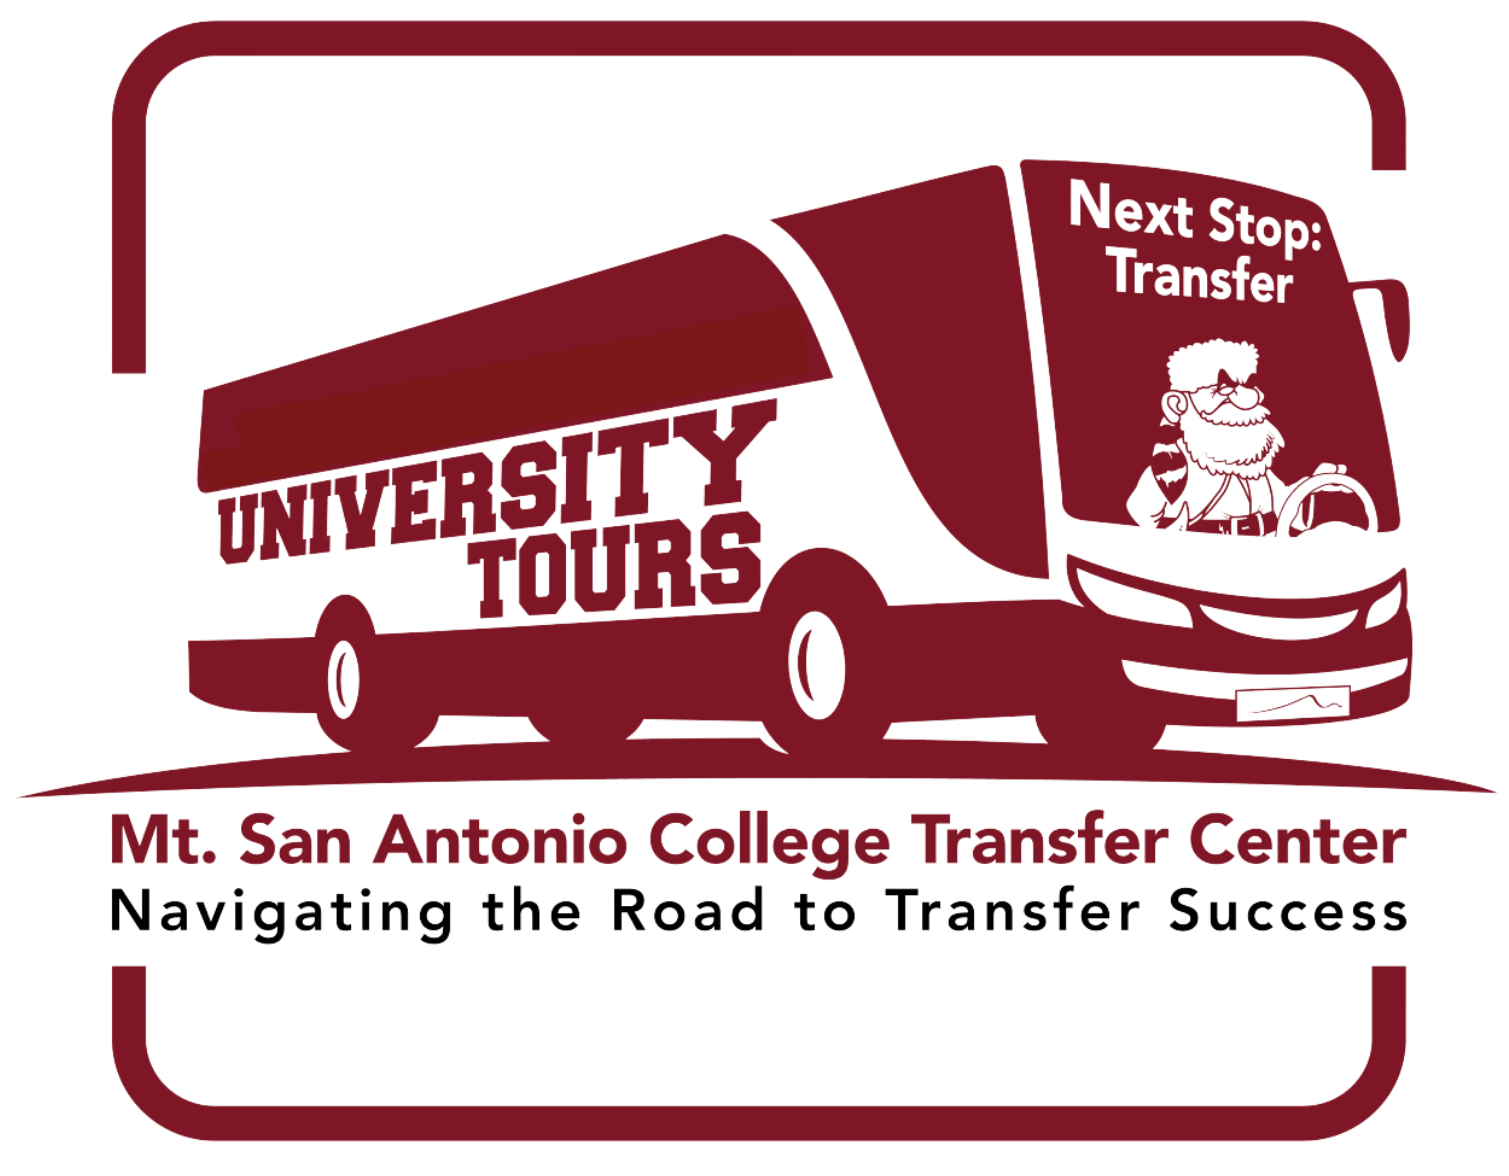 University tour logo